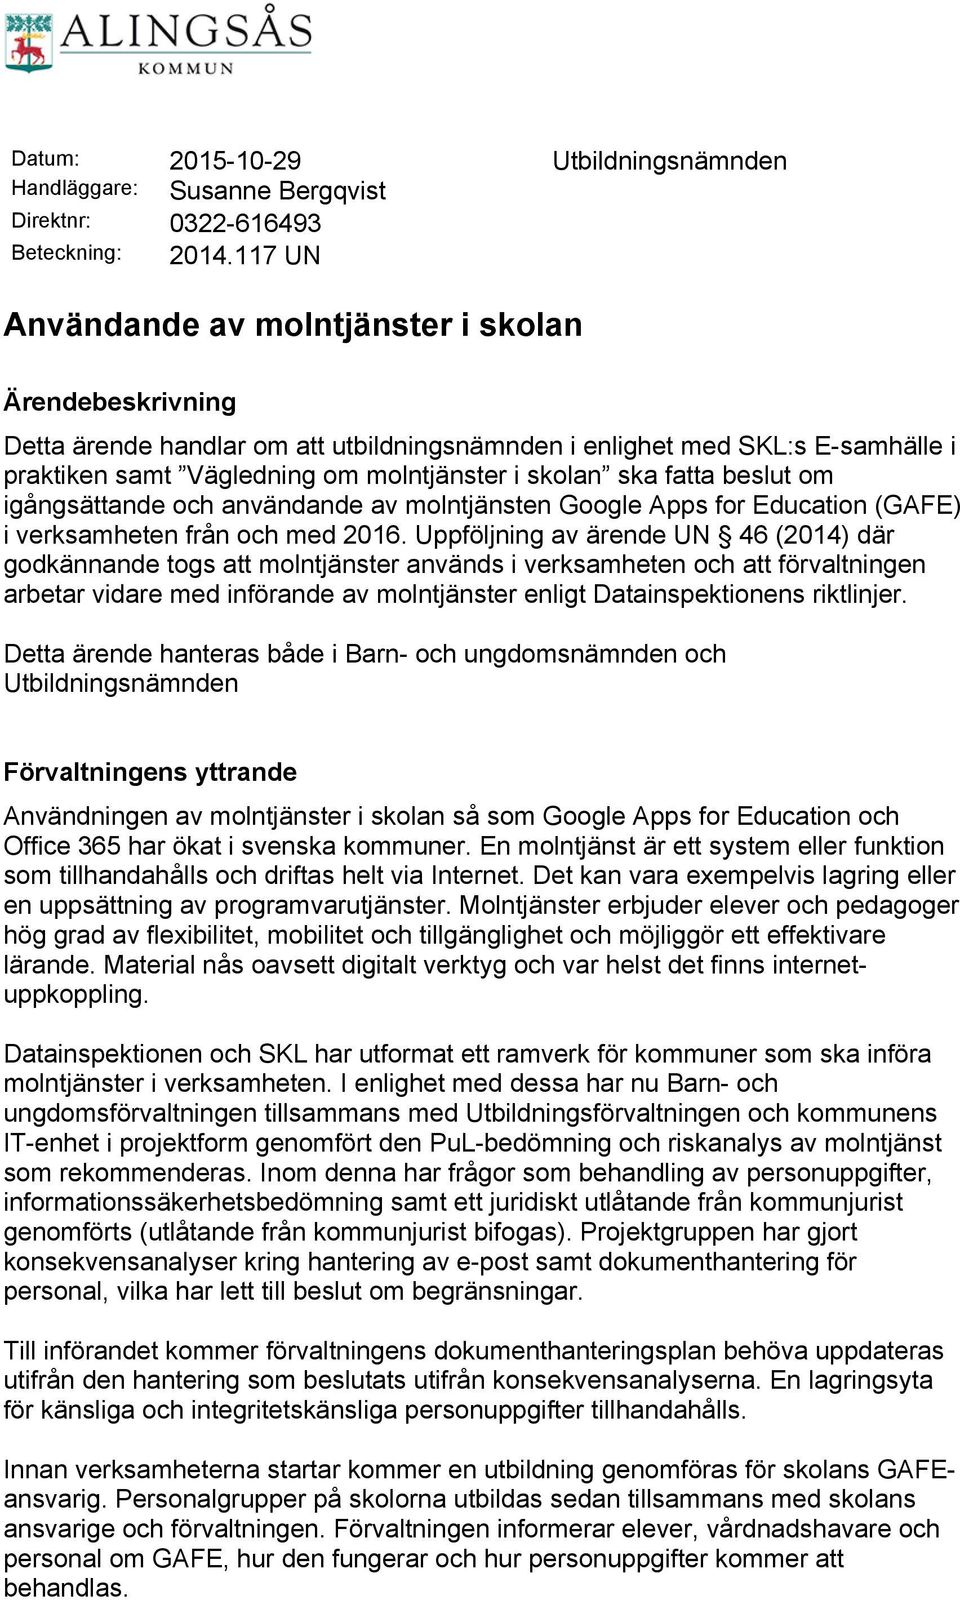 fatta beslut om igångsättande och användande av molntjänsten Google Apps for Education (GAFE) i verksamheten från och med 2016.